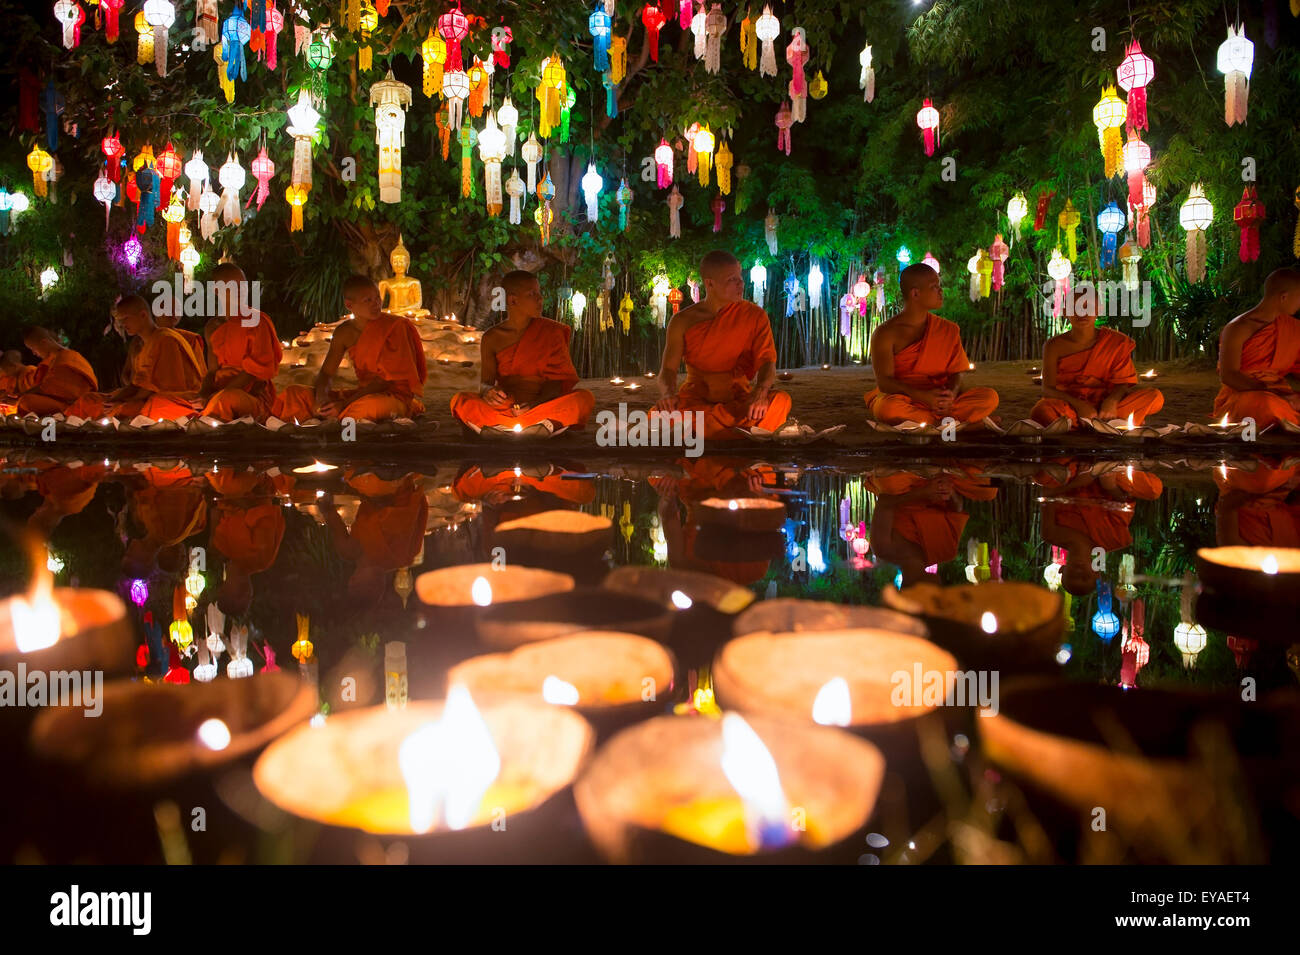 CHIANG MAI, THAÏLANDE - 06 NOVEMBRE 2014 : Bougies flotter en face de jeunes moines bouddhistes méditant dans un festival de lumières. Banque D'Images